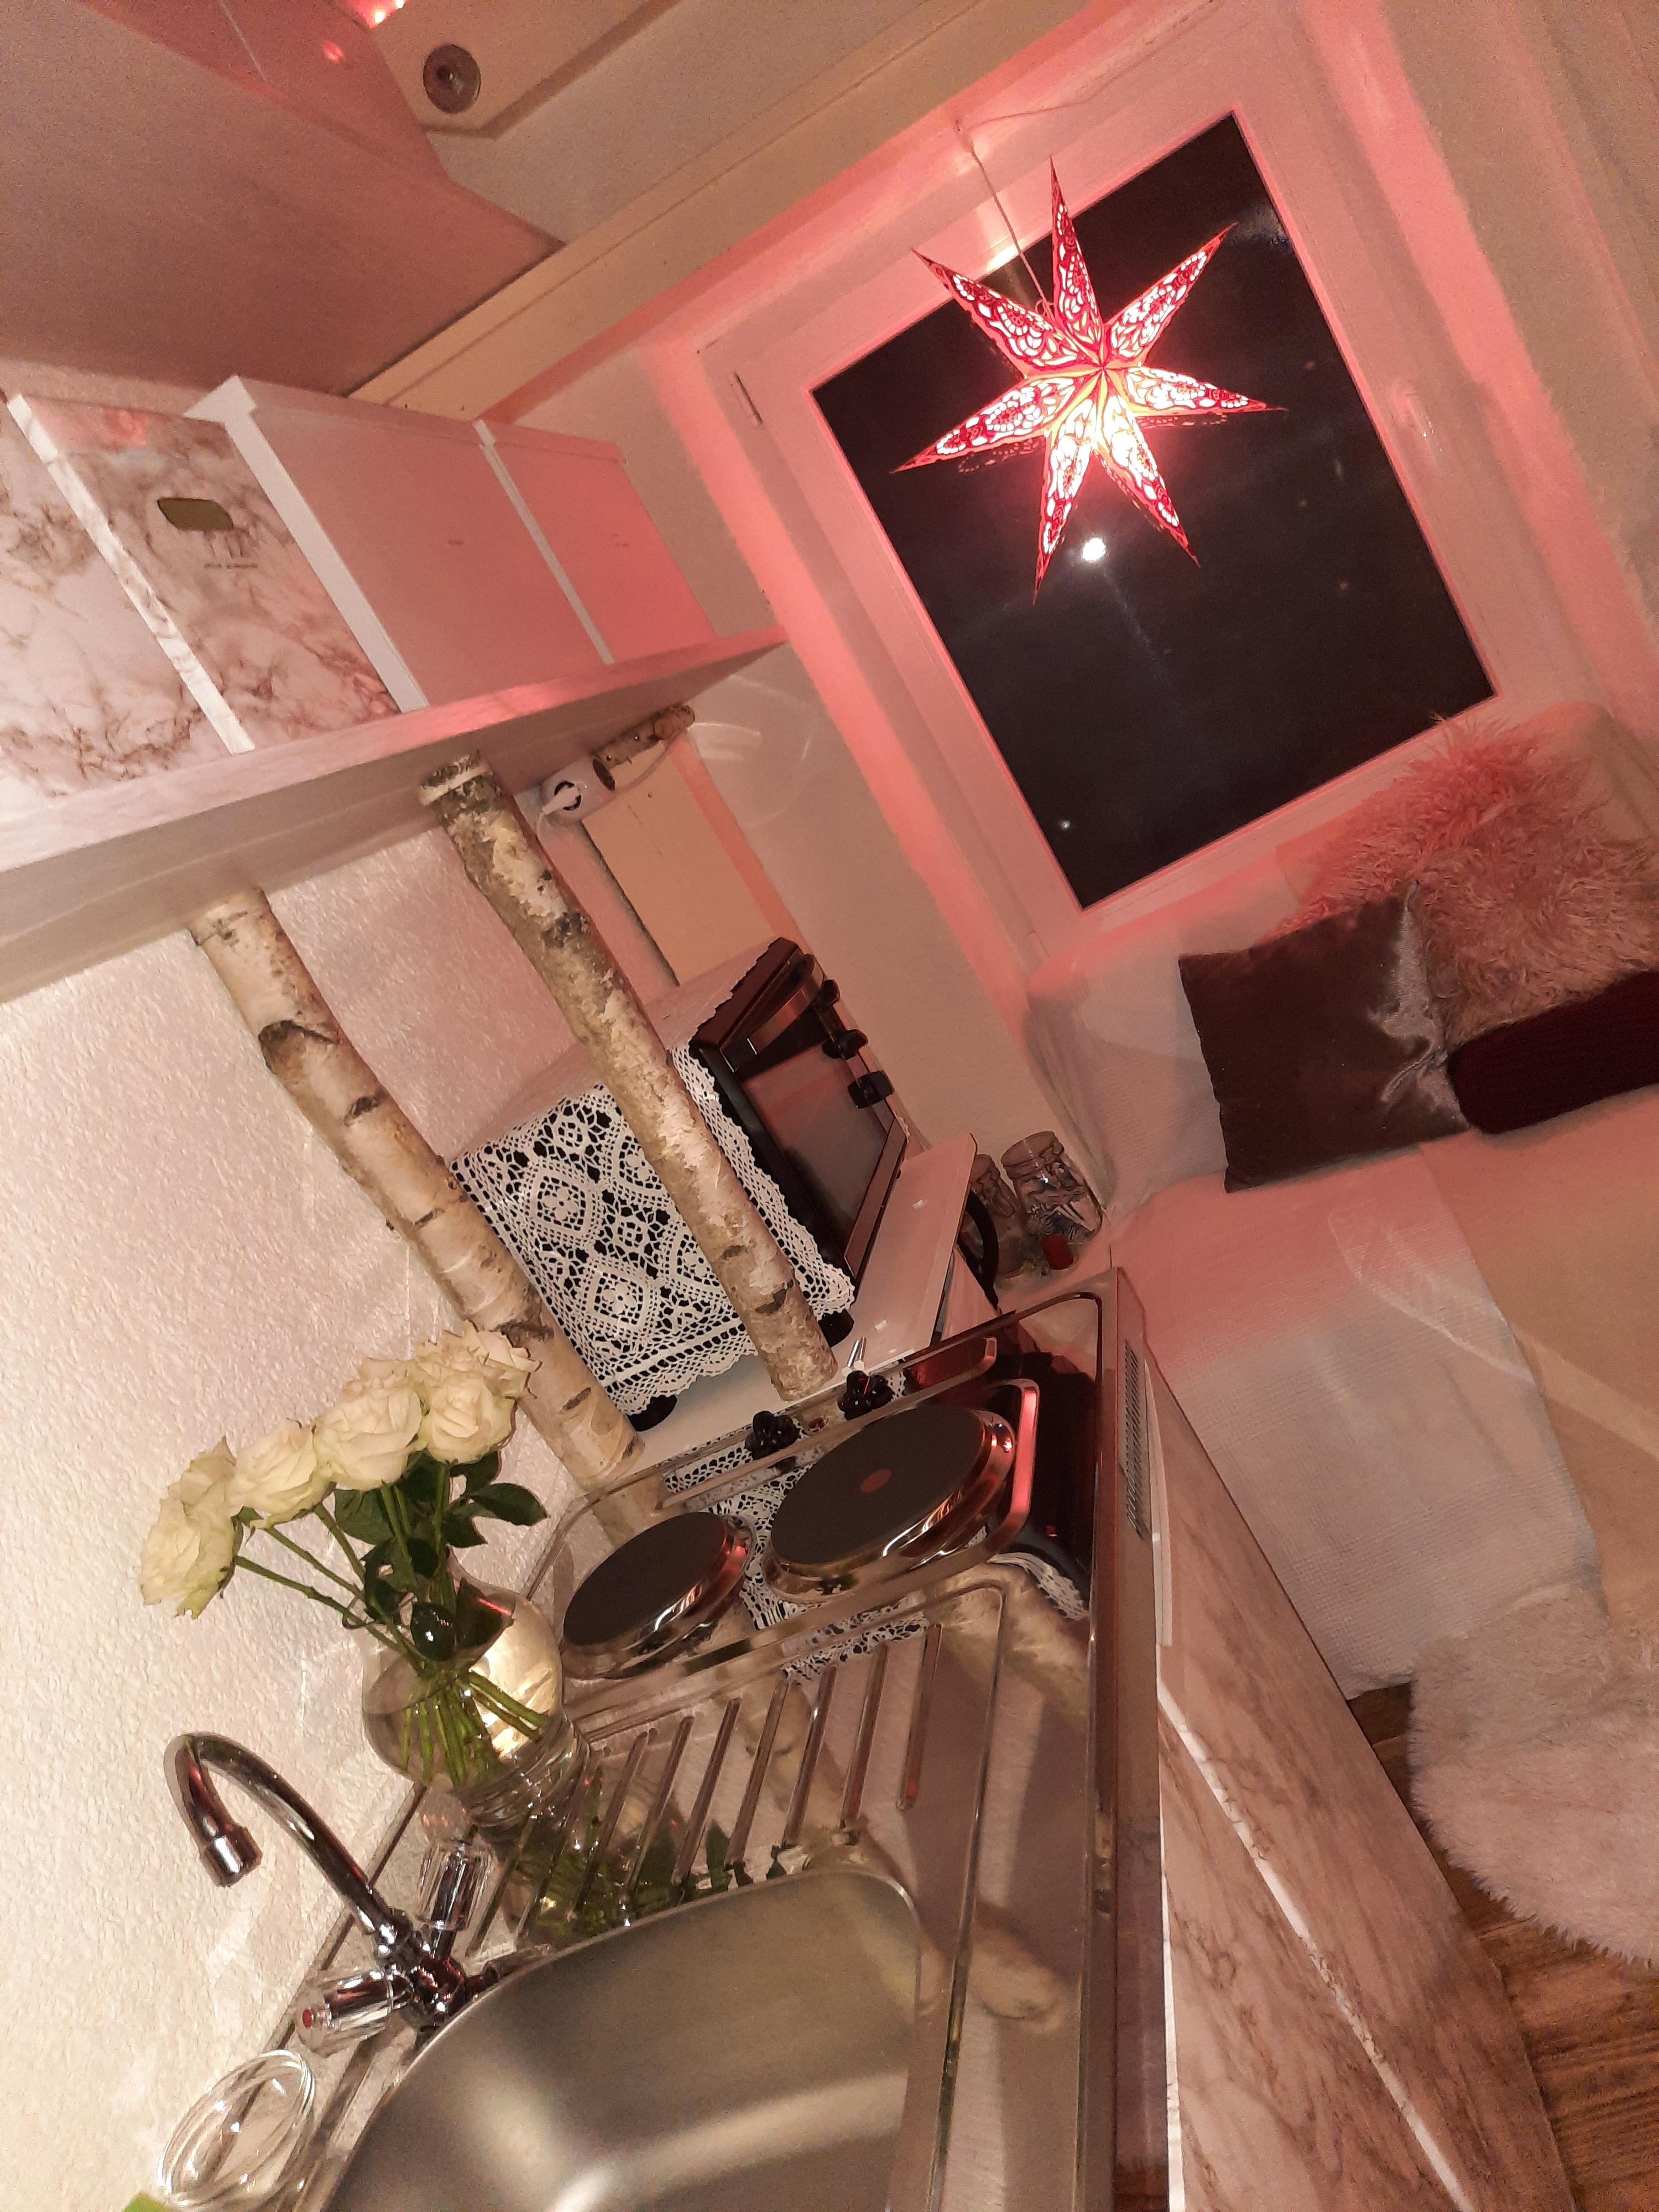 Meine kleine Werkstattwohnung...
#wohnung #werkstatt #weihnachten #weihnachtsdekoration #küche #regale #marmorstil #weiß #stern #stauraum #kleinaberfein #couchstyle 